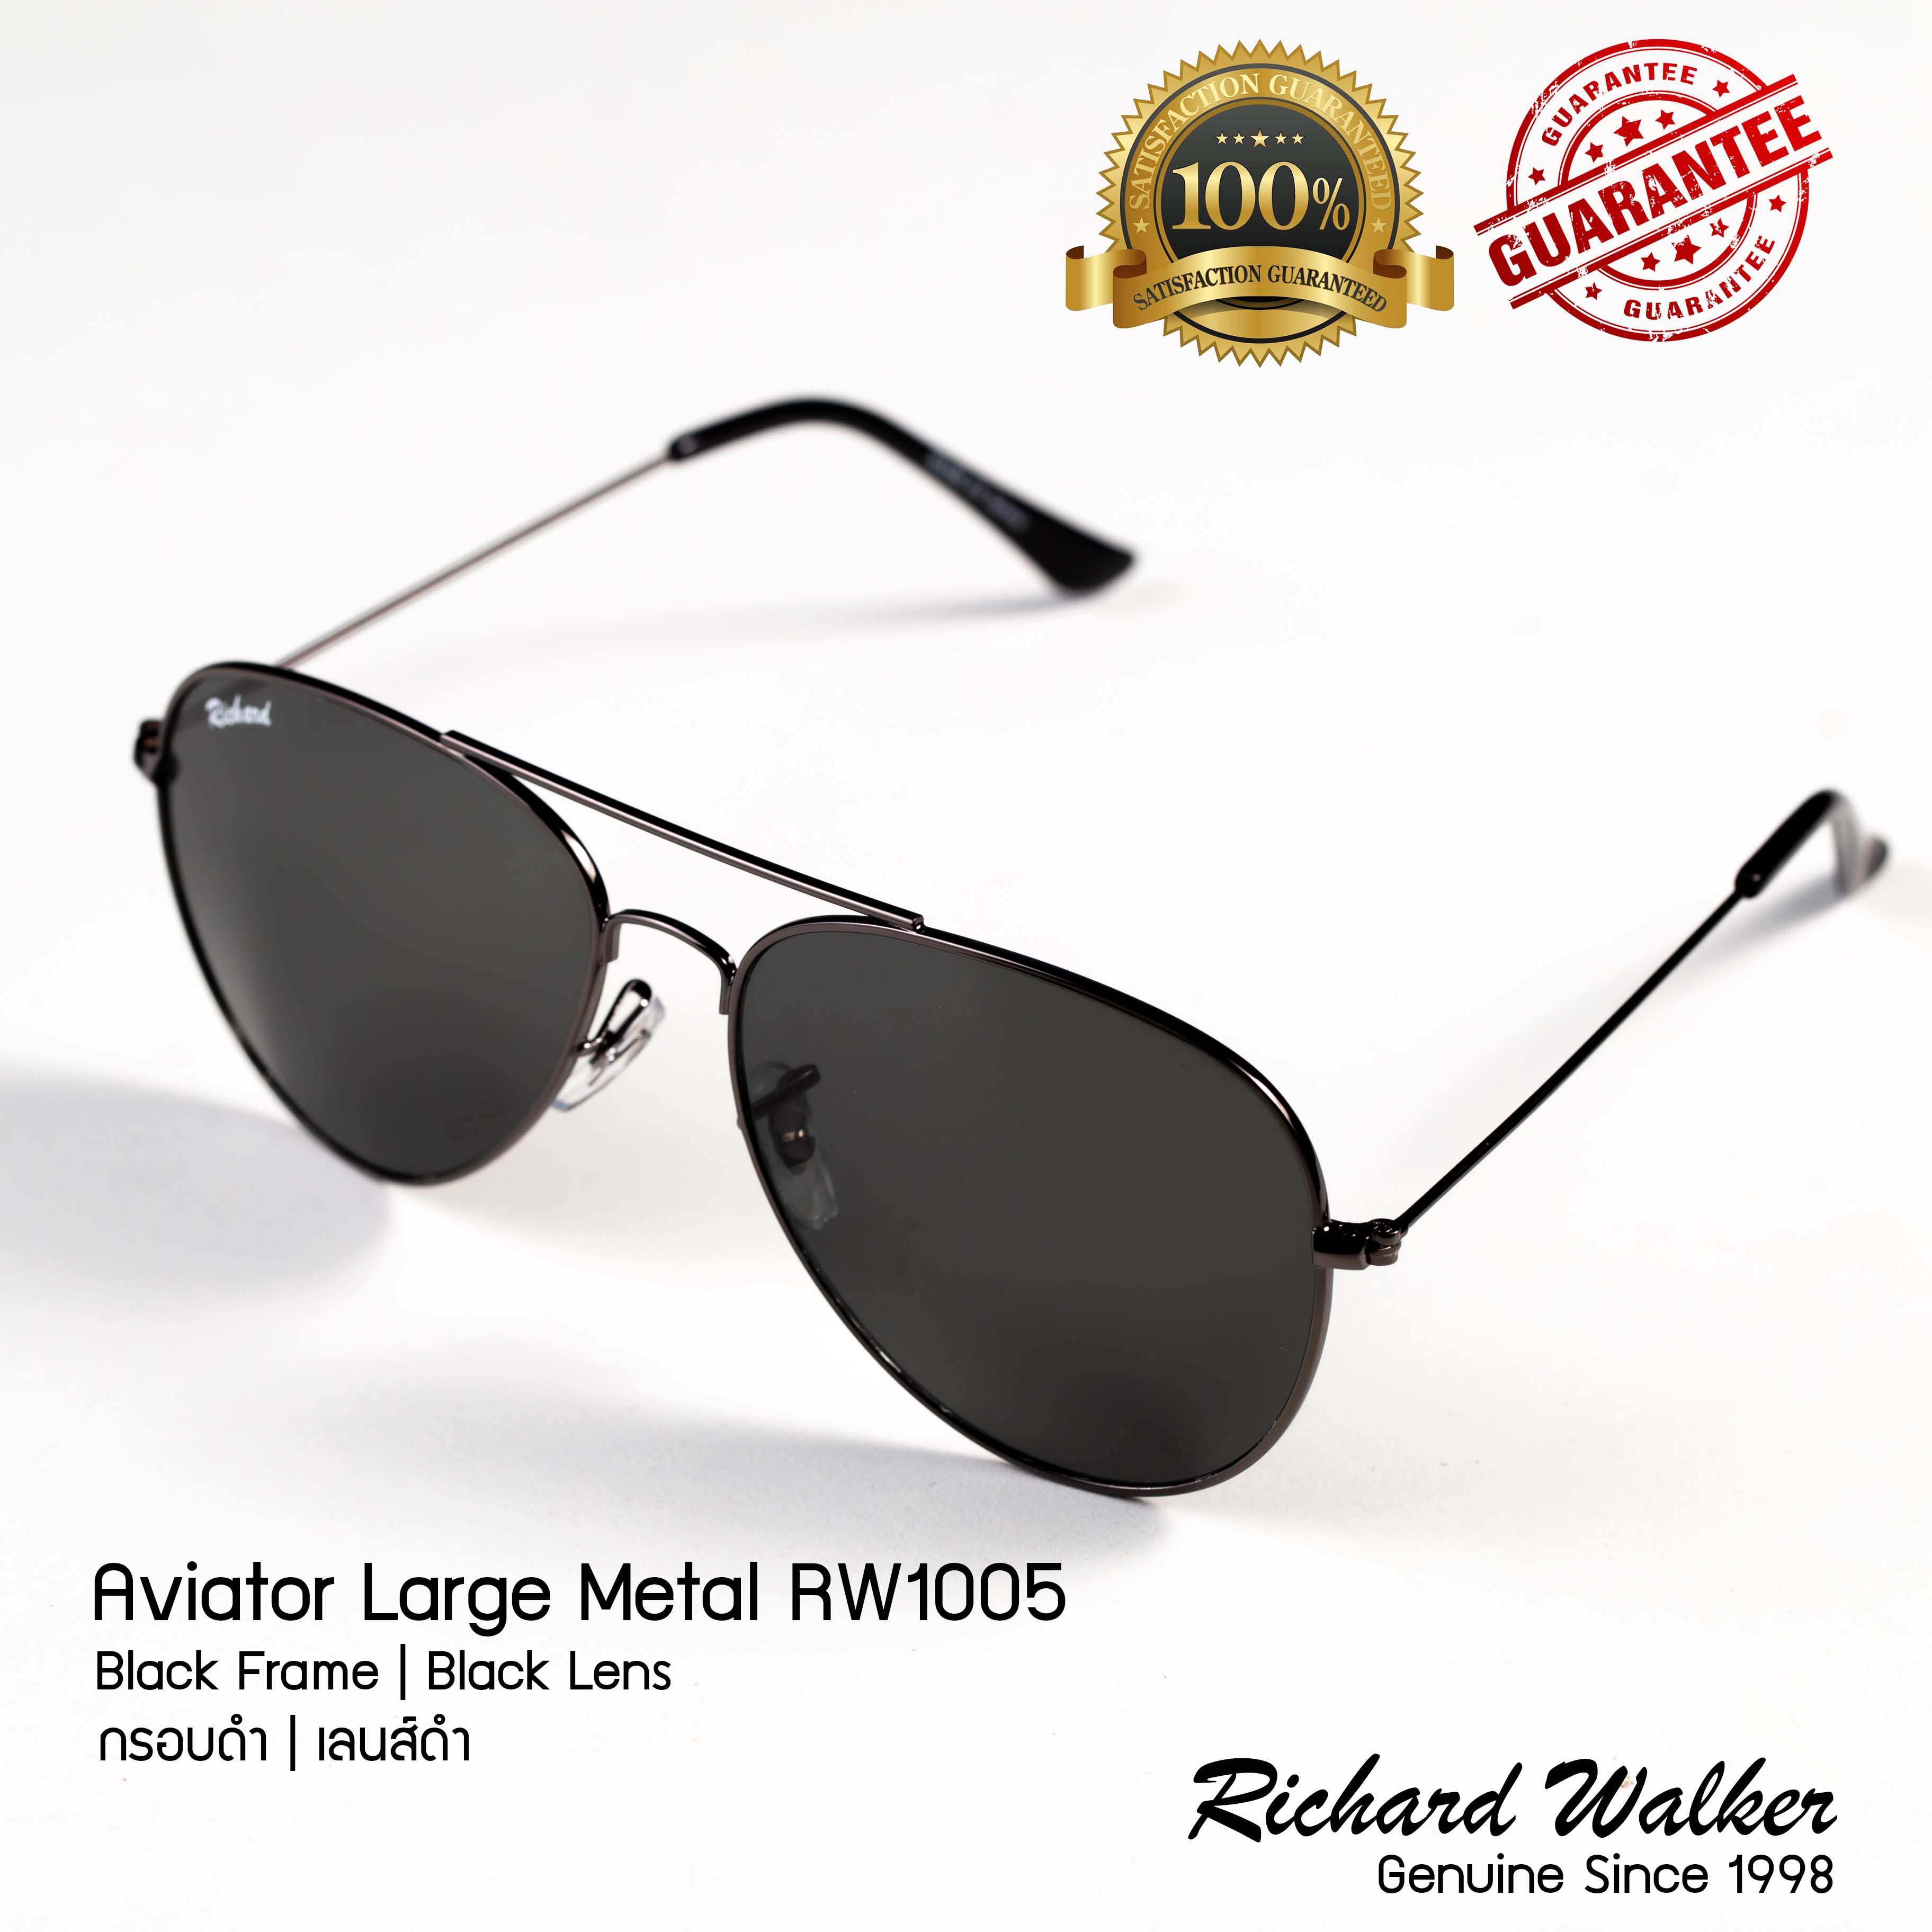 แว่นตากันแดด Richard Walker Aviator Large Metal รุ่น RW1005 New Collection Aviator Black Frame Black Lens กรอบดำ เลนส์ดำ